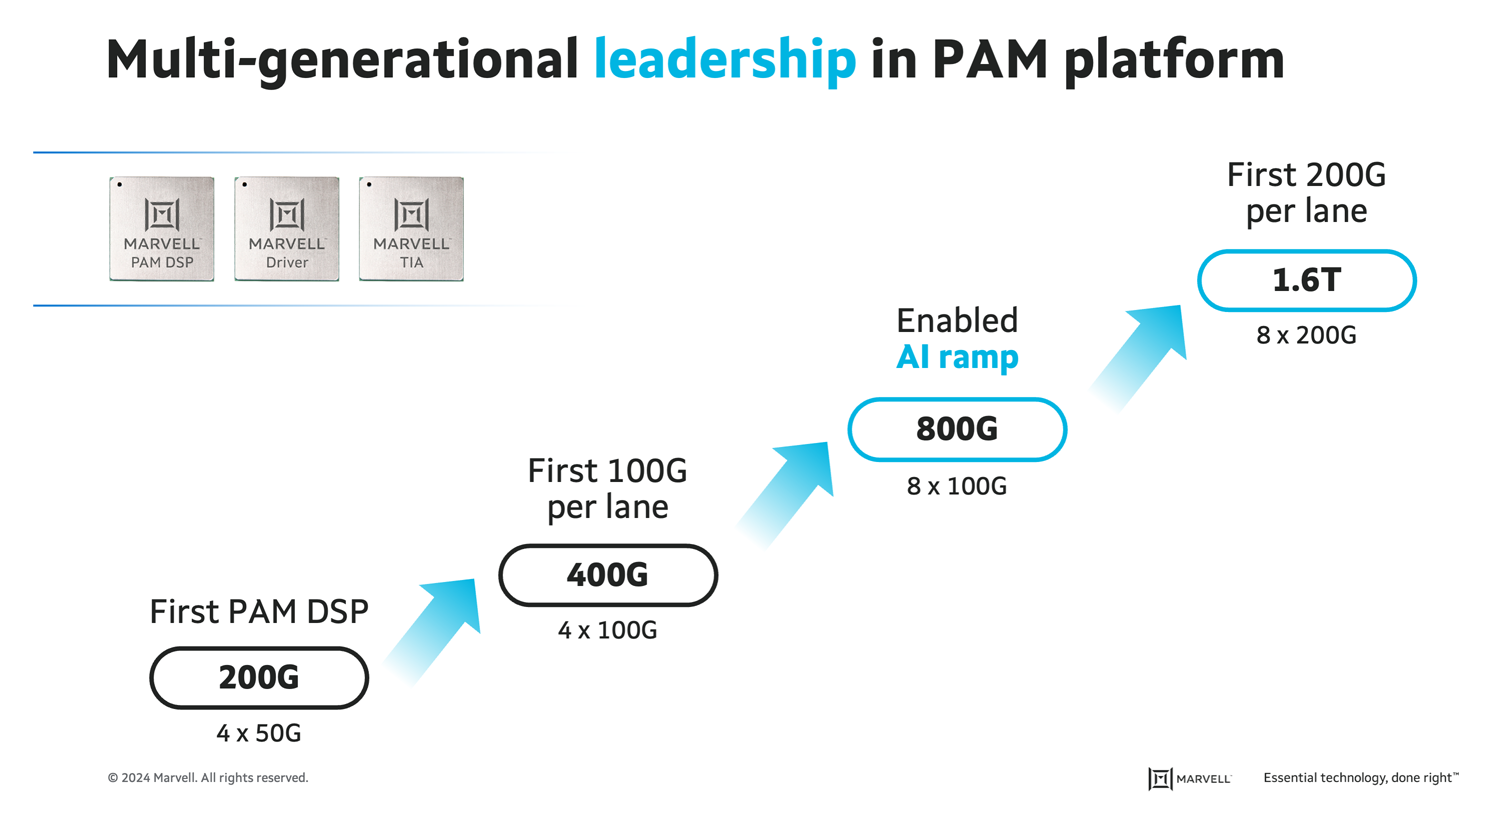 Marvell Leadership in PAM Platform